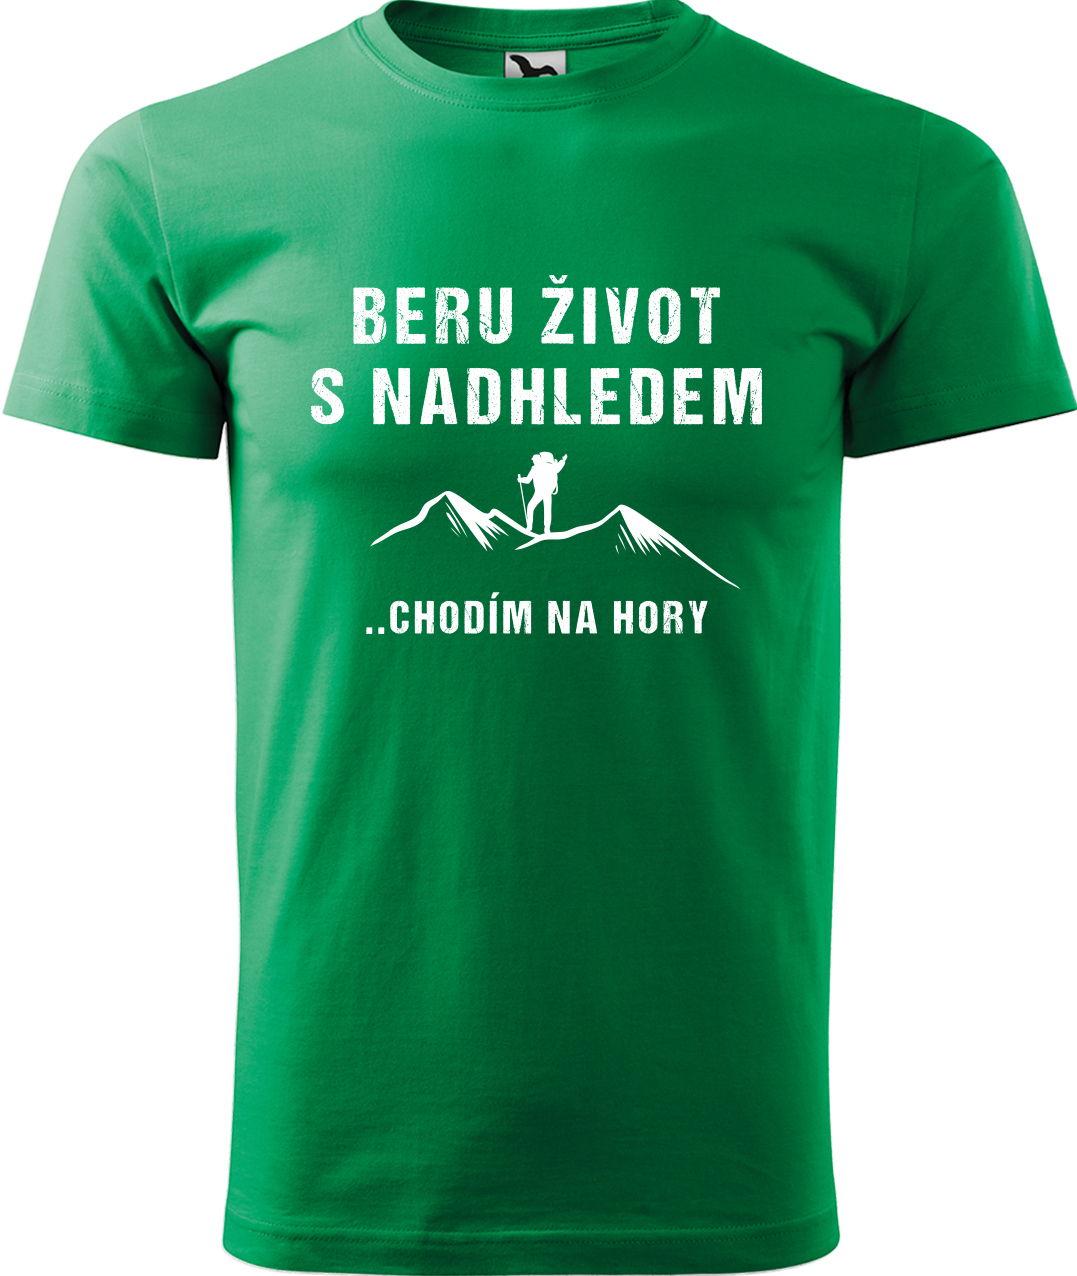 Pánské tričko na hory - Beru život s nadhledem, chodím na hory Velikost: L, Barva: Středně zelená (16), Střih: pánský